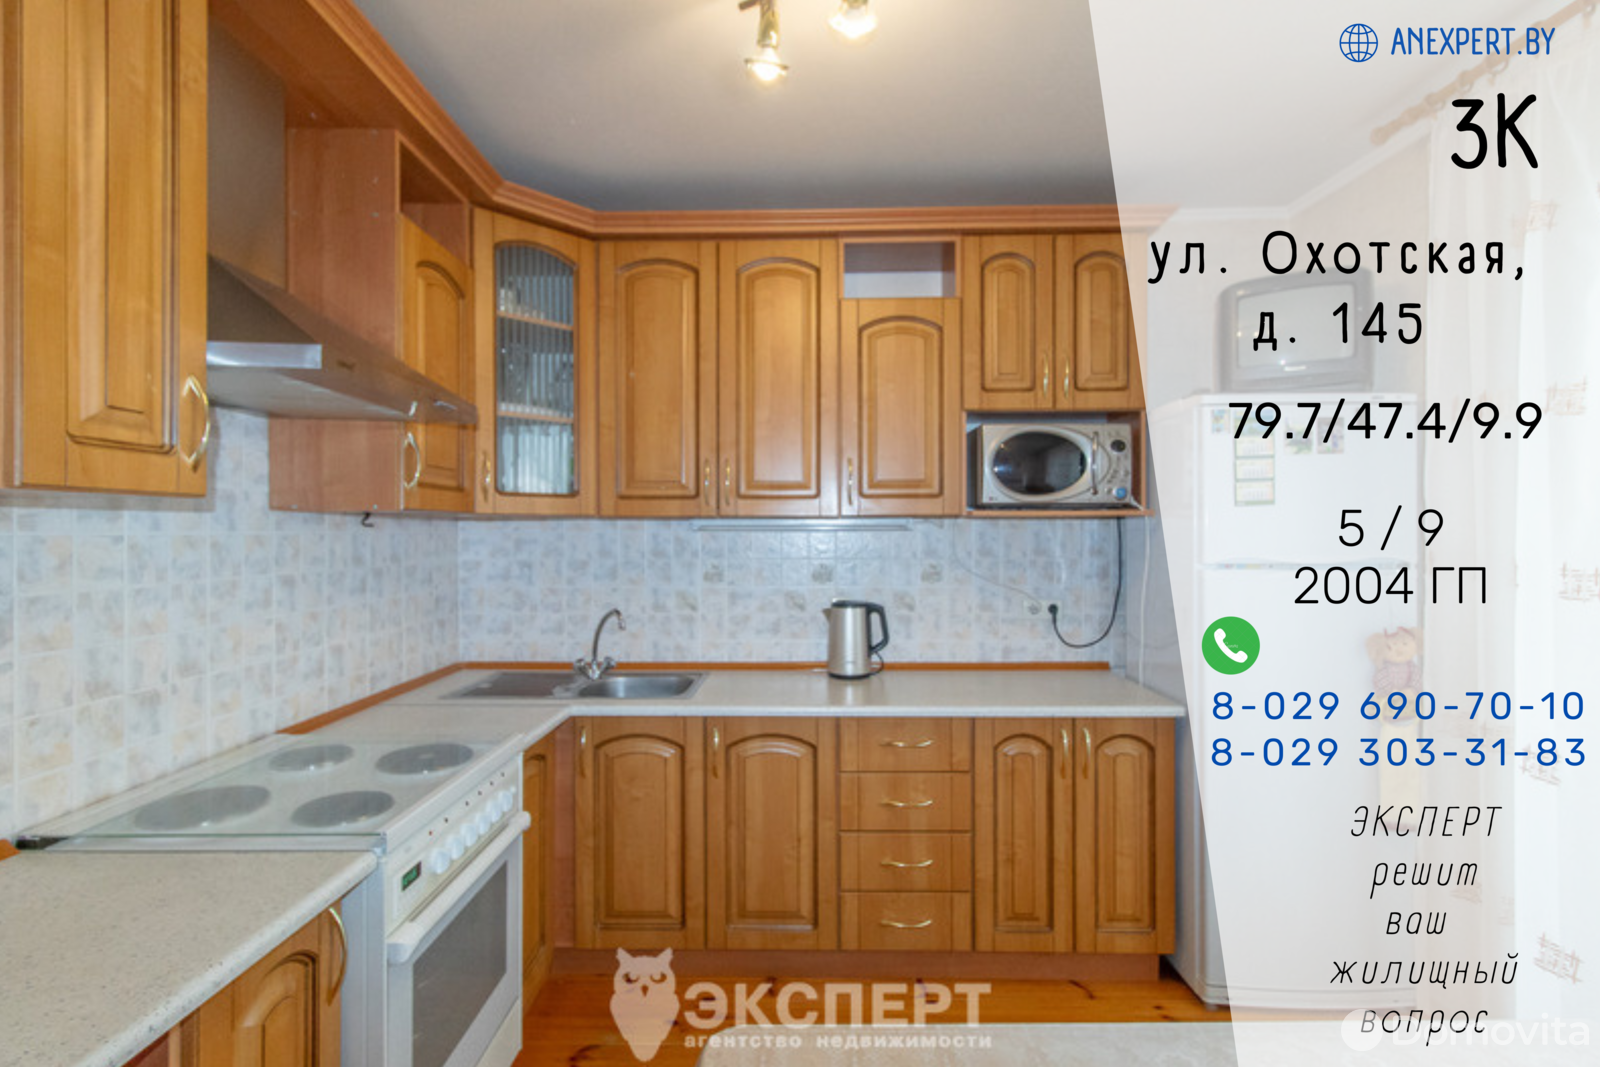 продажа квартиры, Минск, ул. Охотская, д. 145